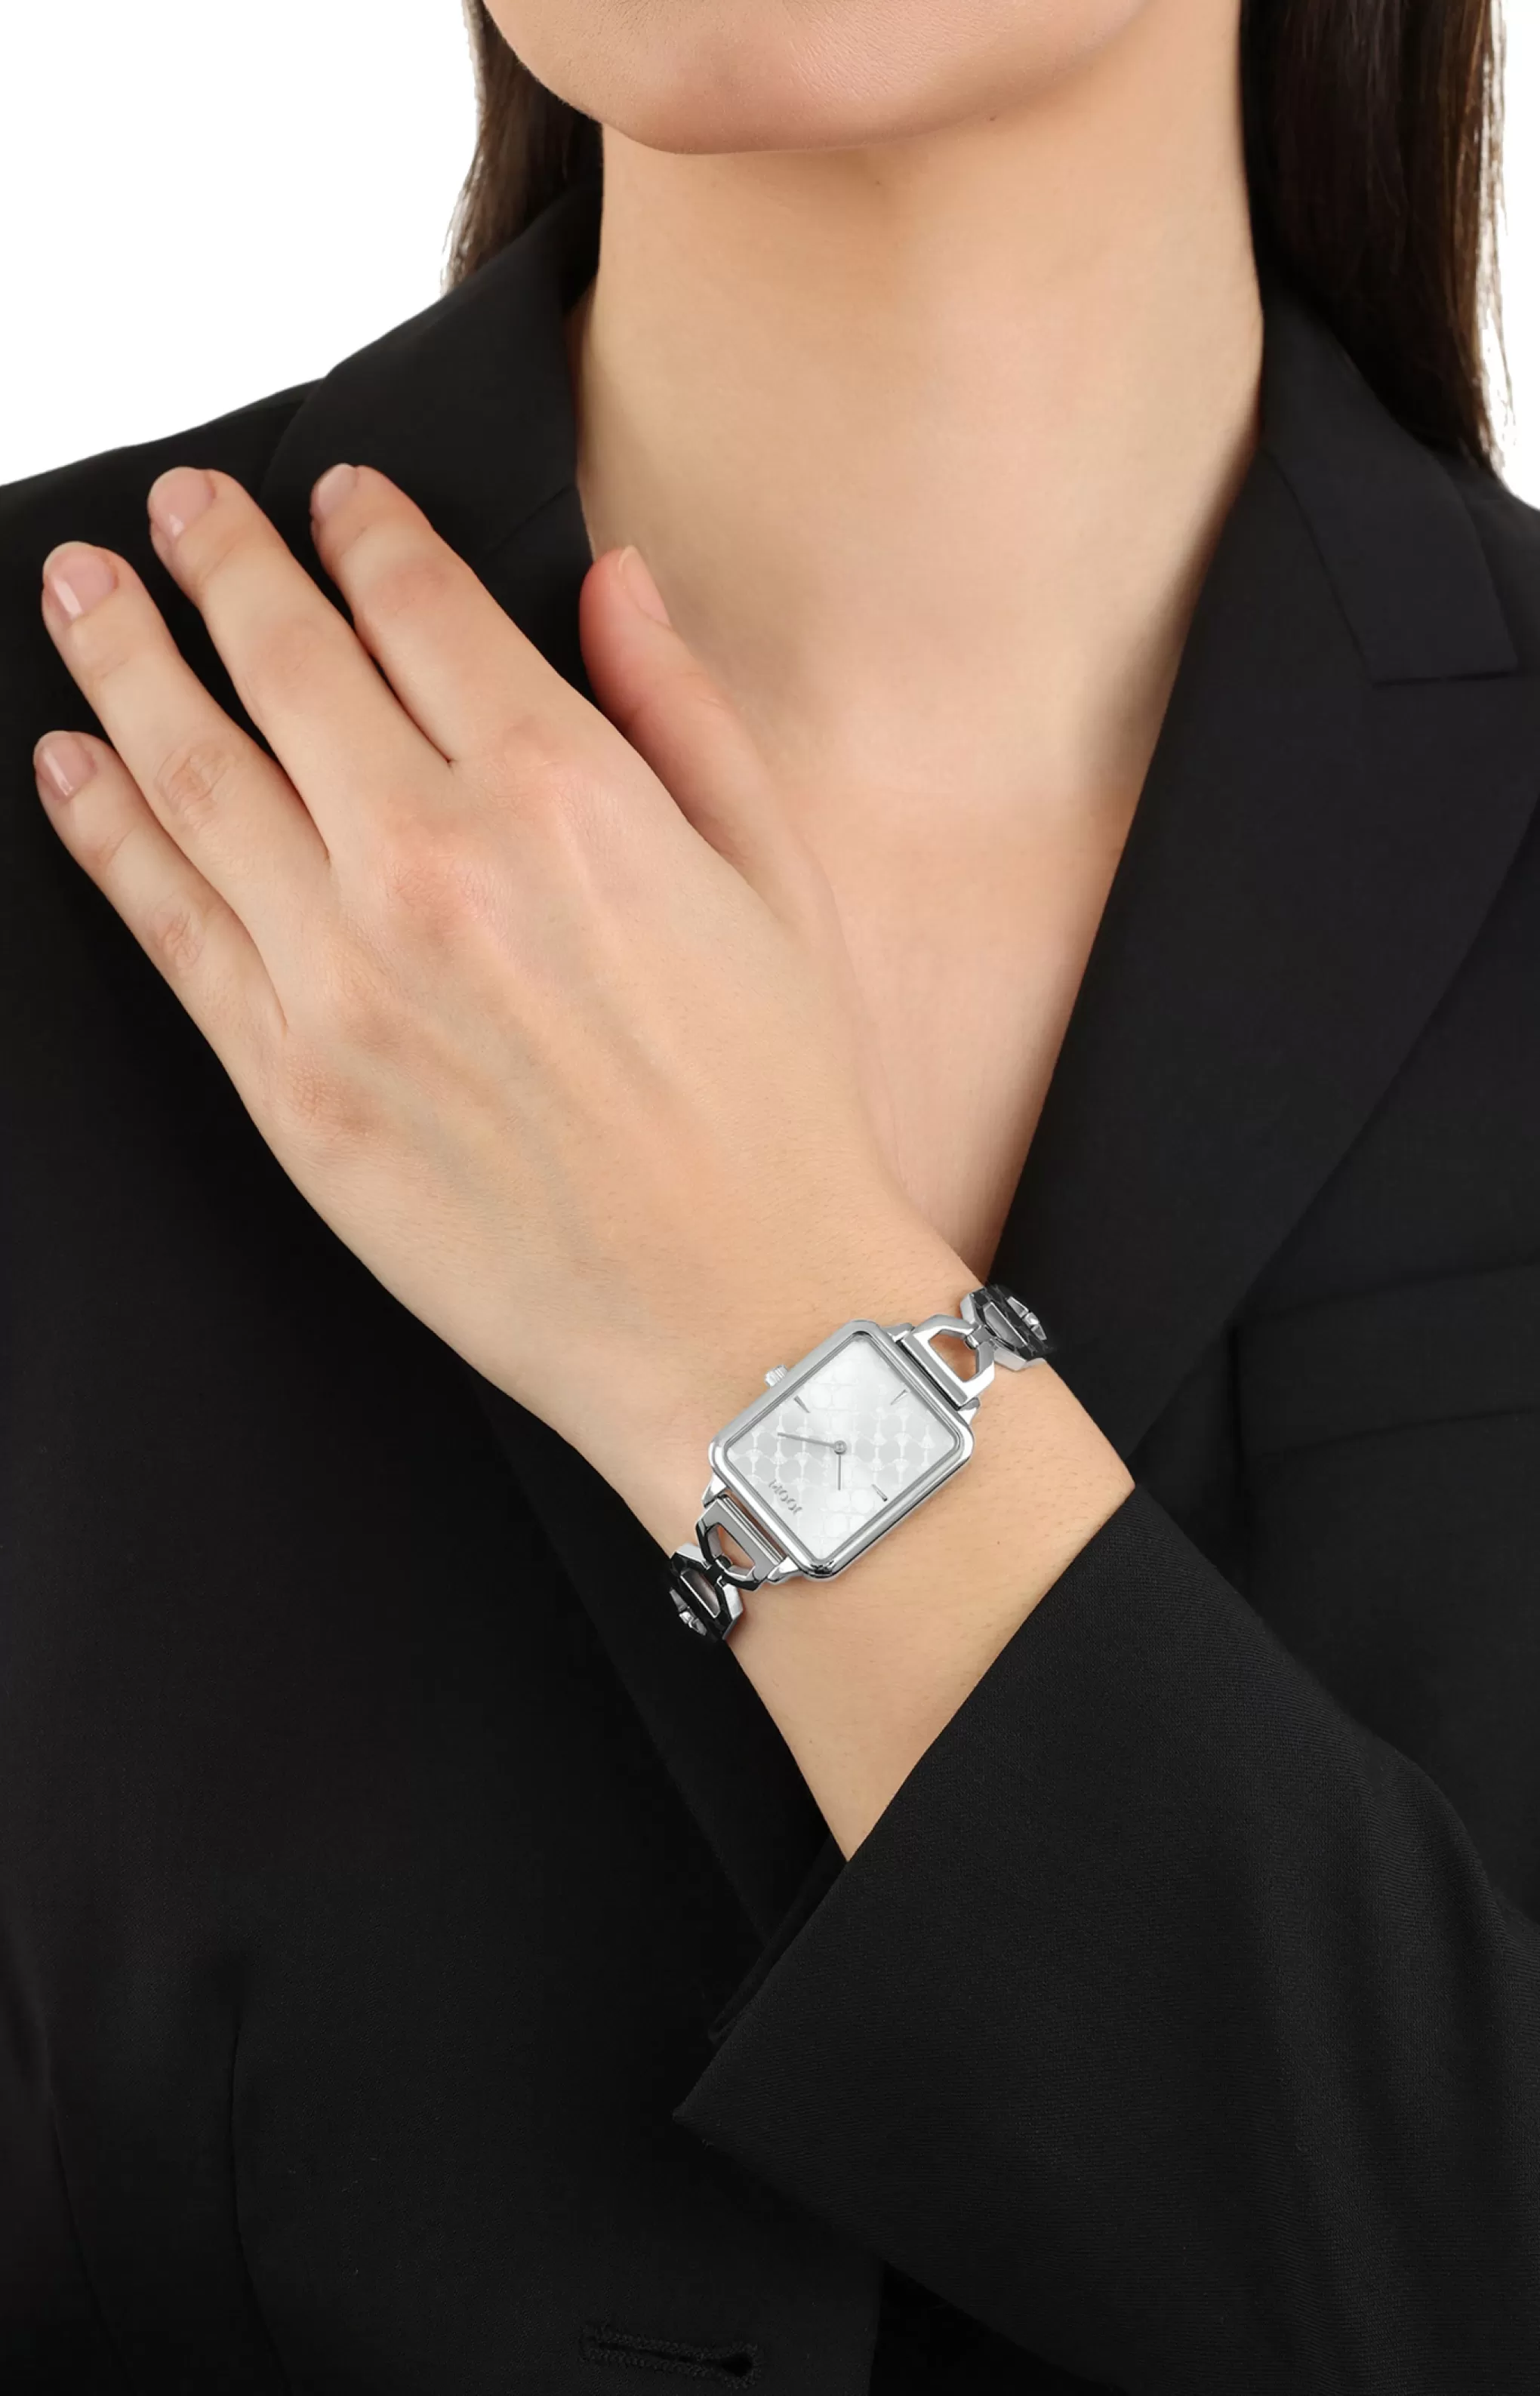 Watches | Jewellery*JOOP Watches | Jewellery Women’s Watch in